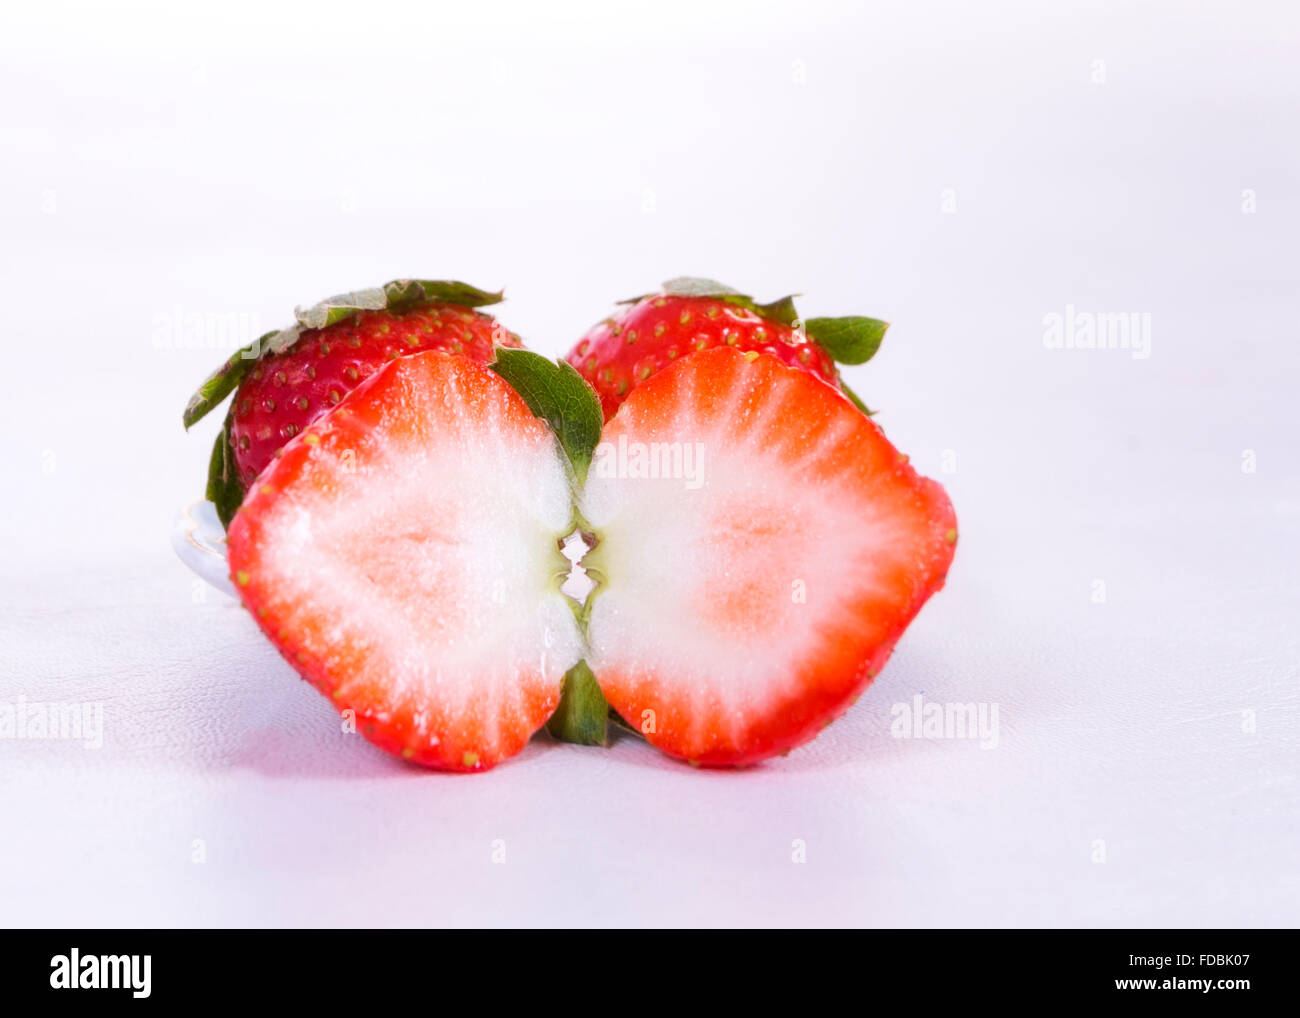 Une fraise coupé en deux et deux fraises derrière ce plus, le tout sur fond blanc Banque D'Images